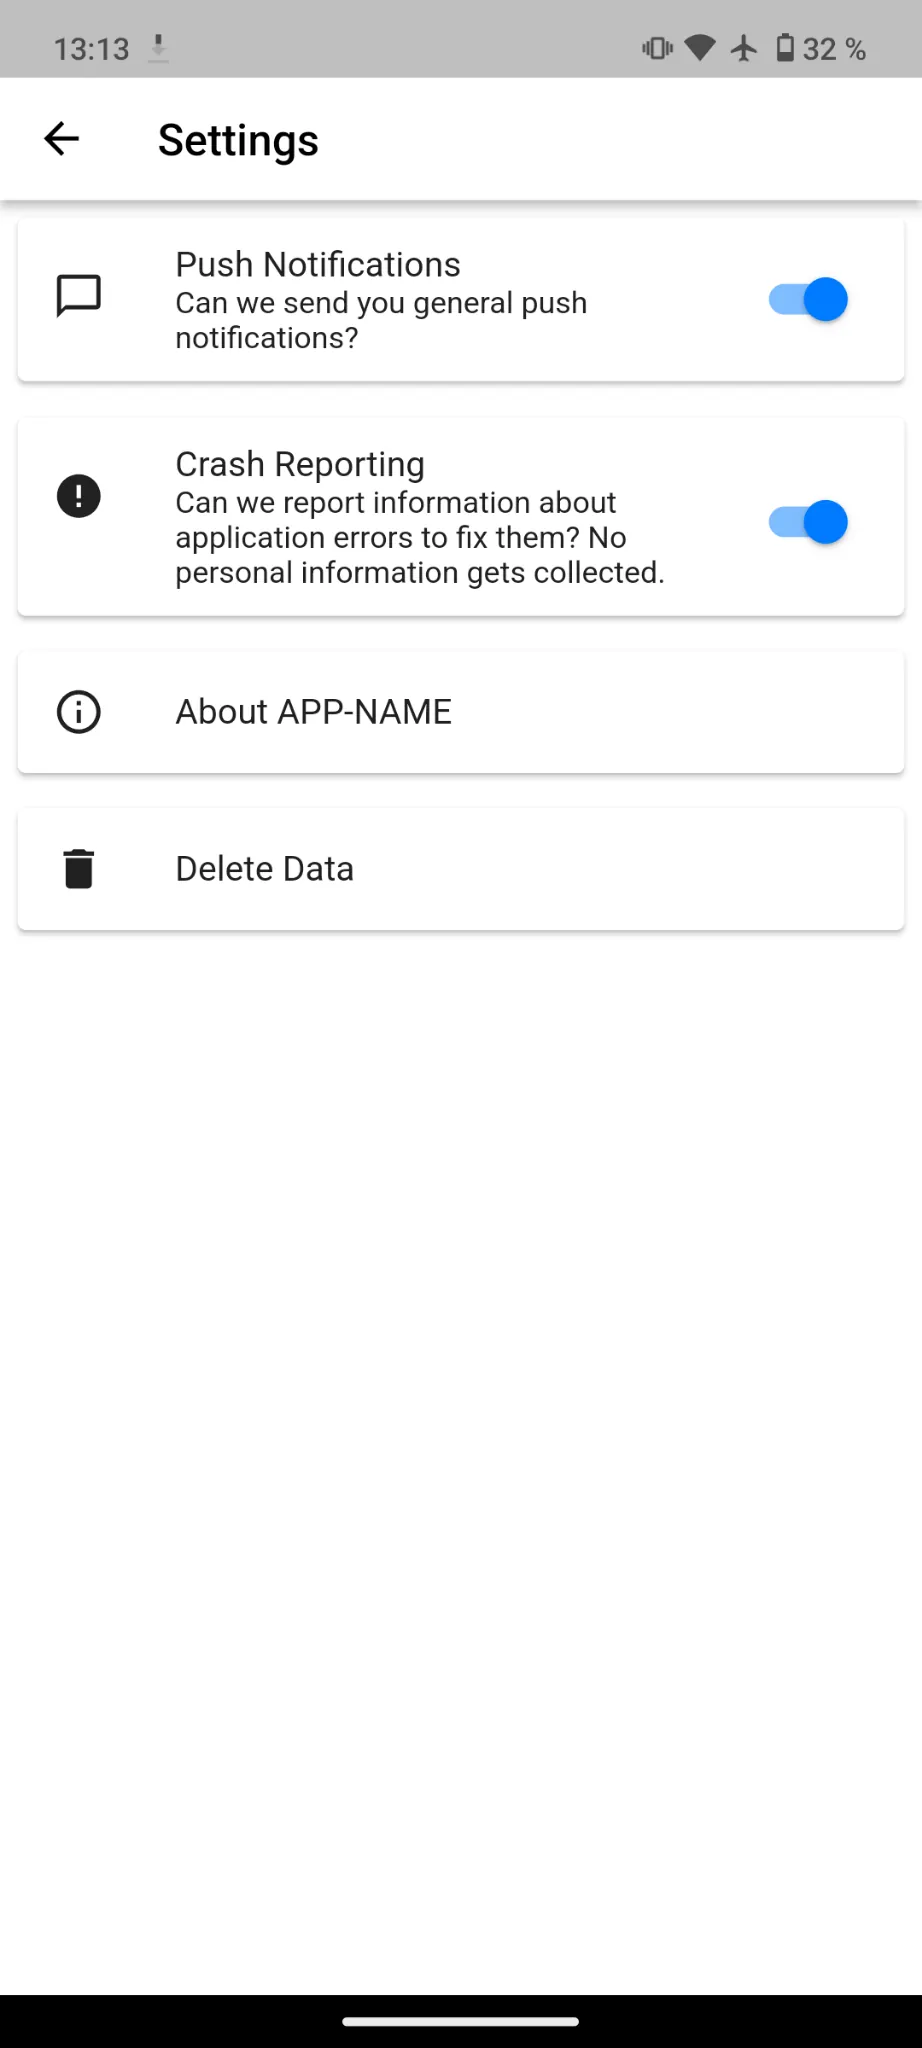 Een screenshot van de app-instellingen met de kaart Gegevens verwijderen.